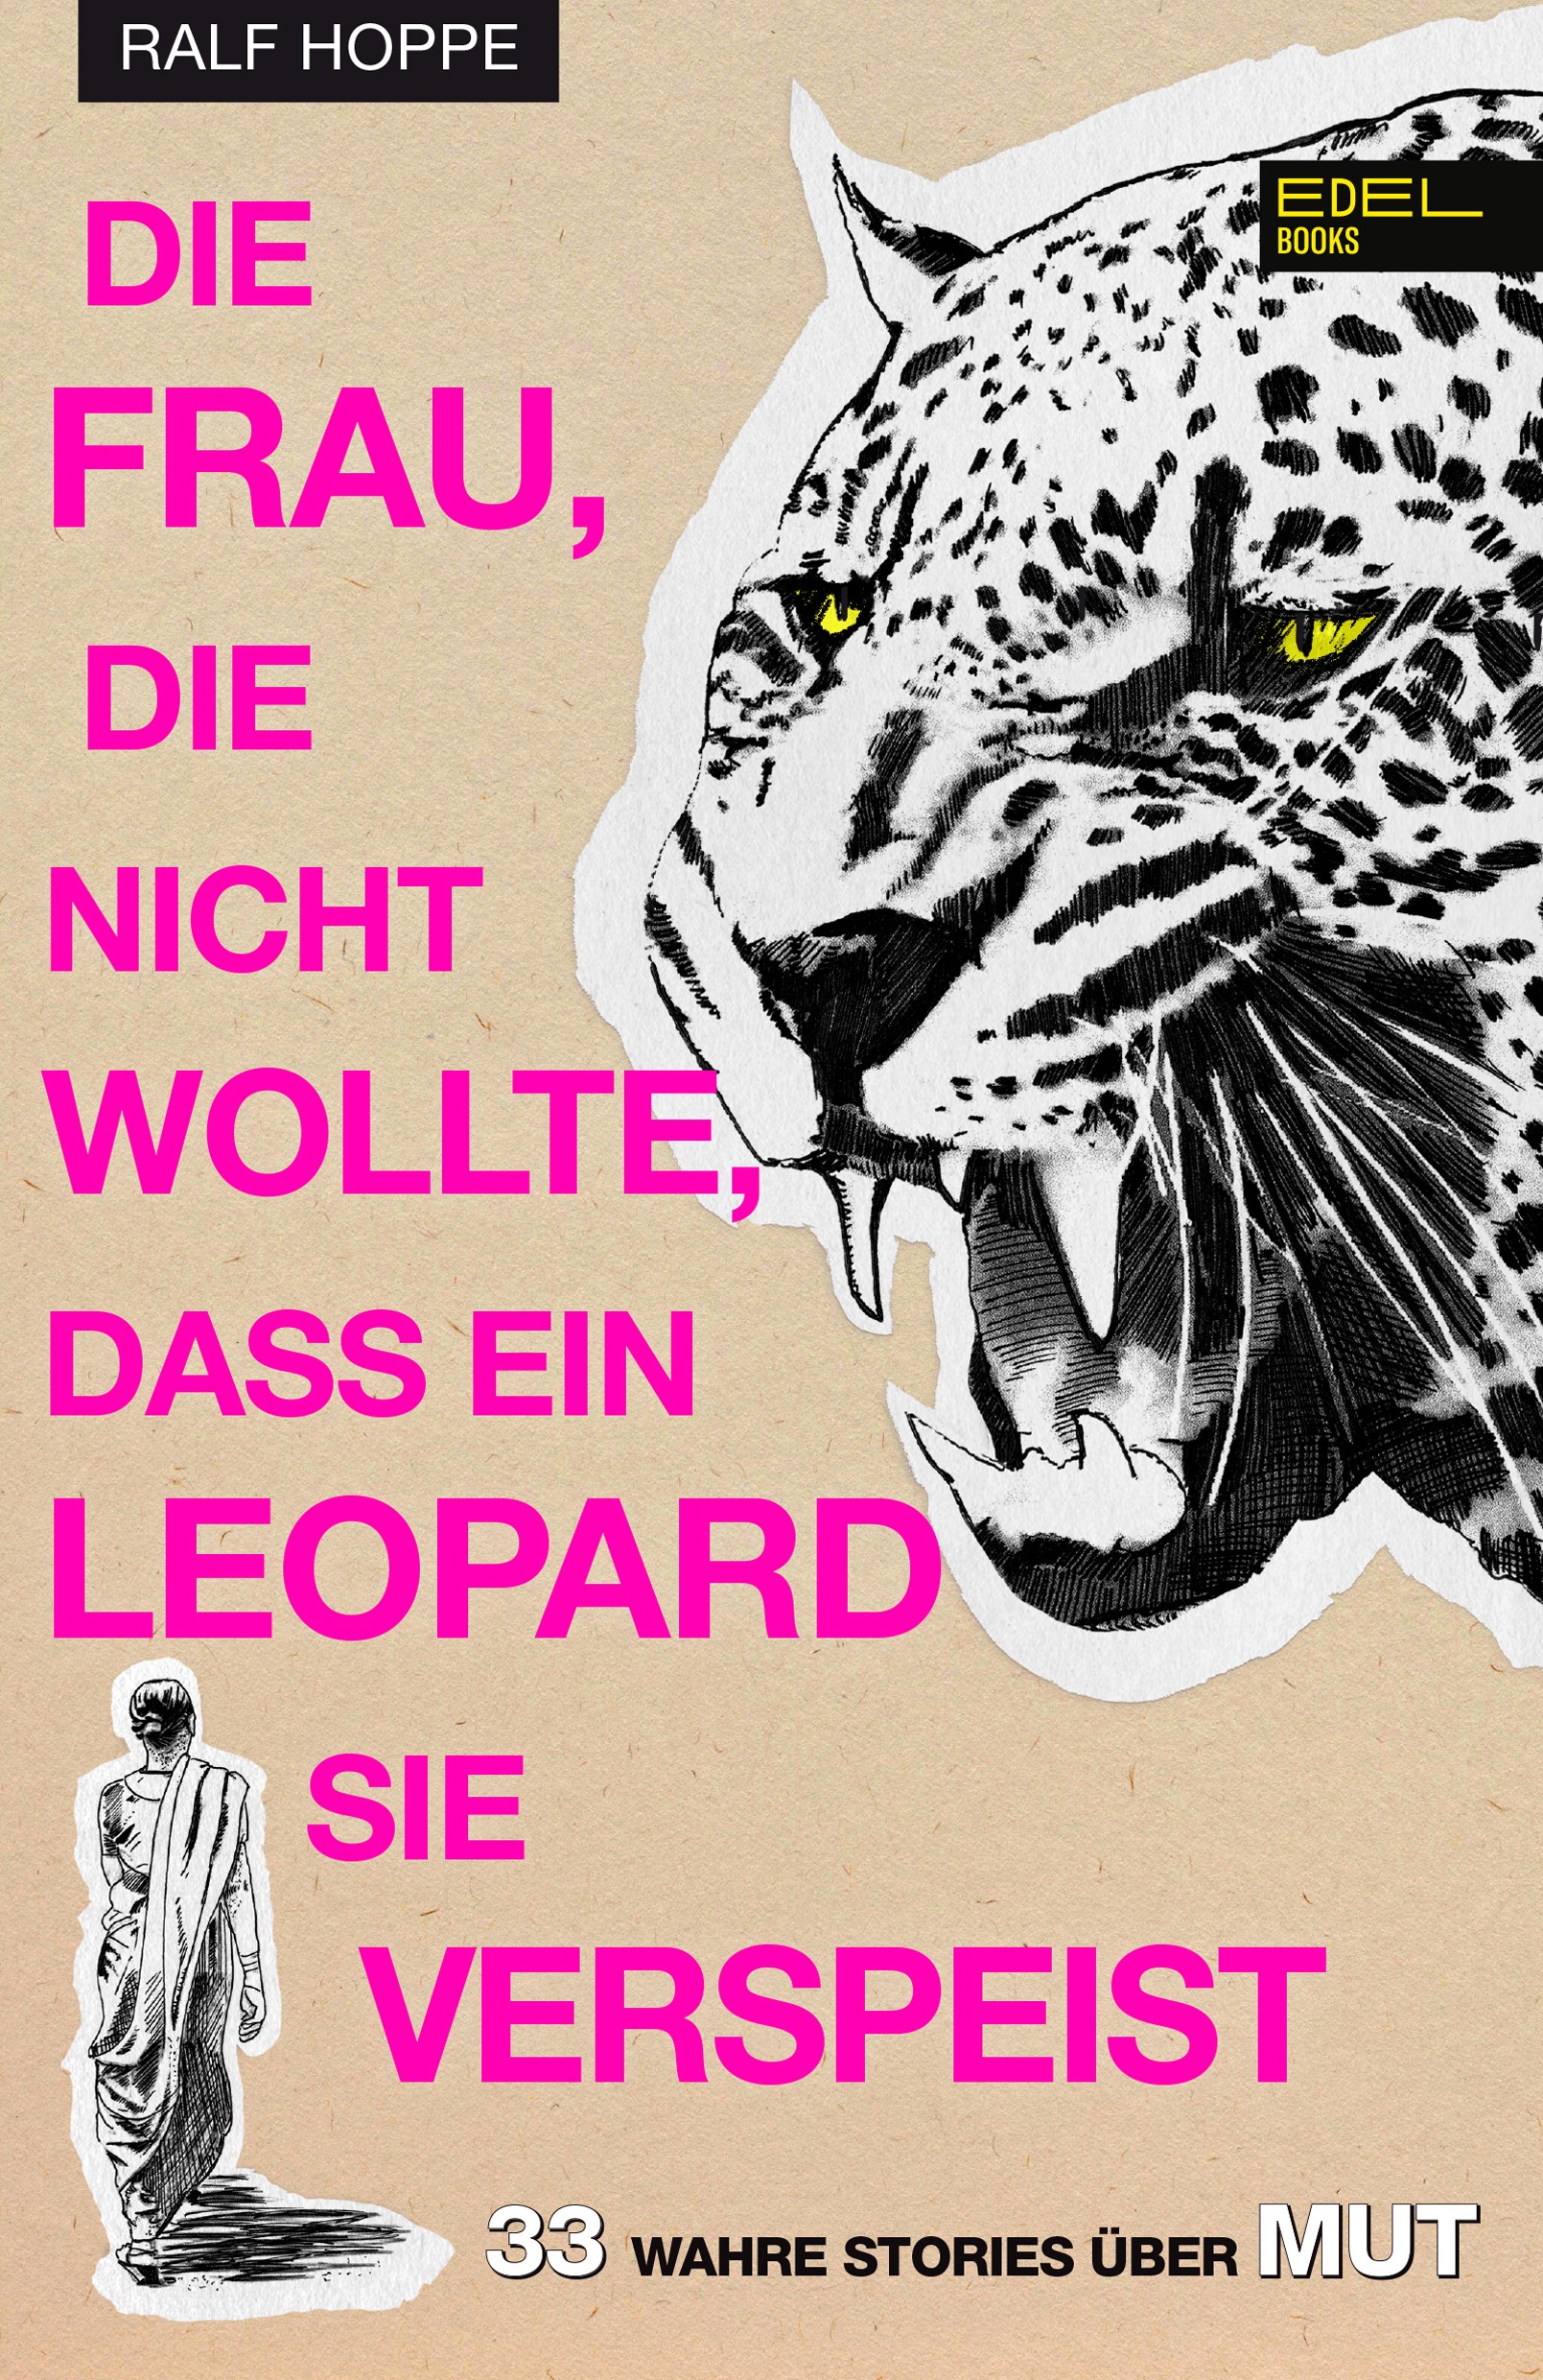 Buchcover: Ralf Hoppe: Die Frau, die nicht wollte, dass ein Leopard sie verspeist